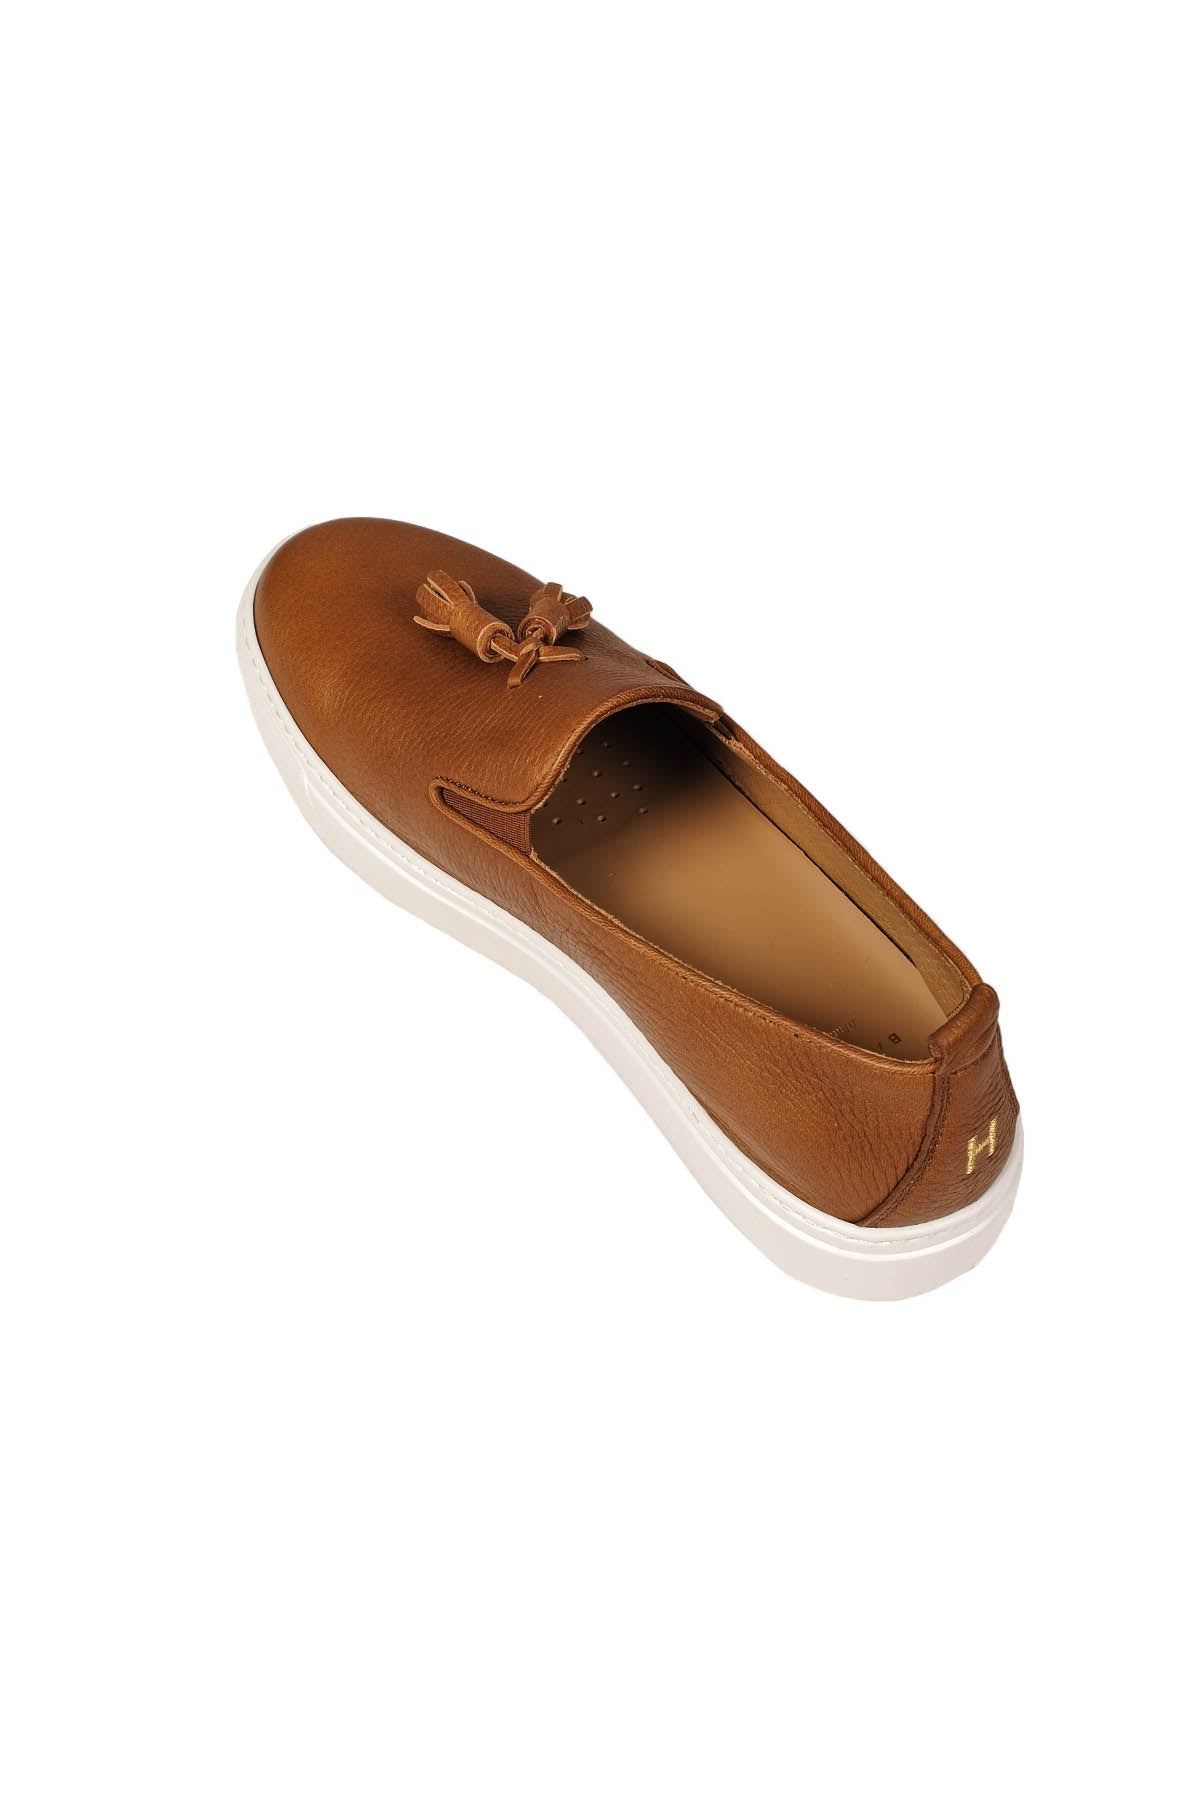 Henderson Brett Püsküllü Loafer Ayakkabı-Libas Trendy Fashion Store